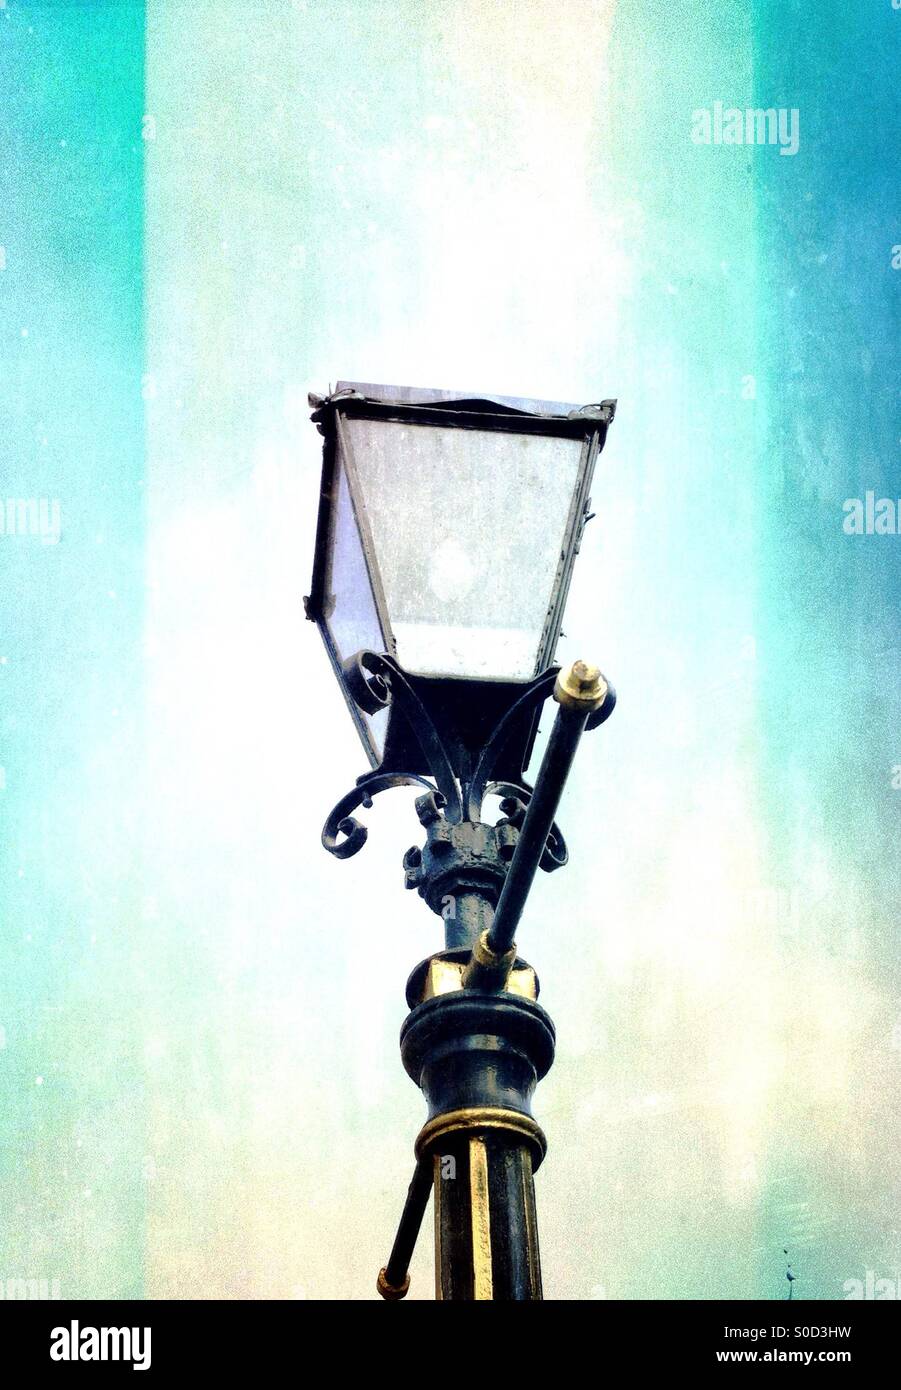 Vieille lampe de rue Banque D'Images